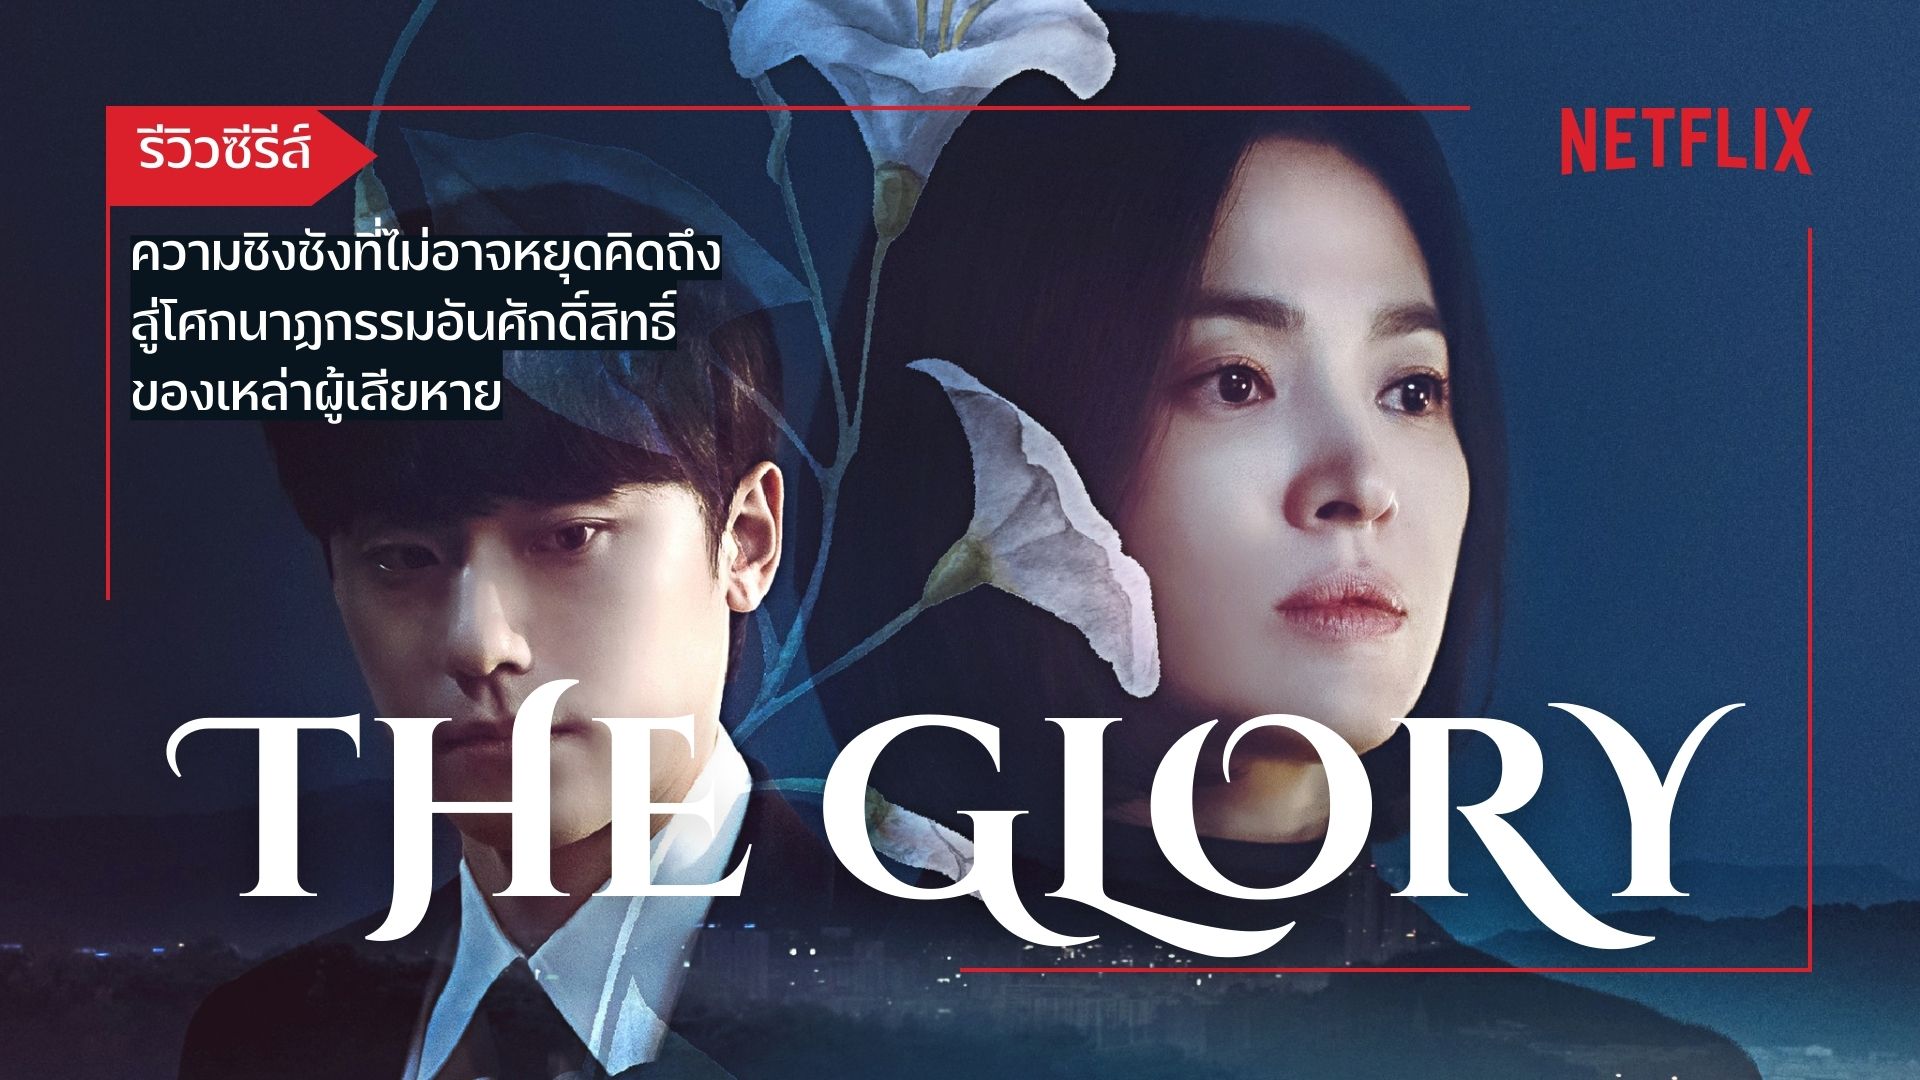 รีวิว The Glory ซีรีส์แนวแก้แค้น อันดุเดือดท่ามกลางบรรยากาศสงบ บรรยายไทย พากย์ไทย ผ่าน Netflix